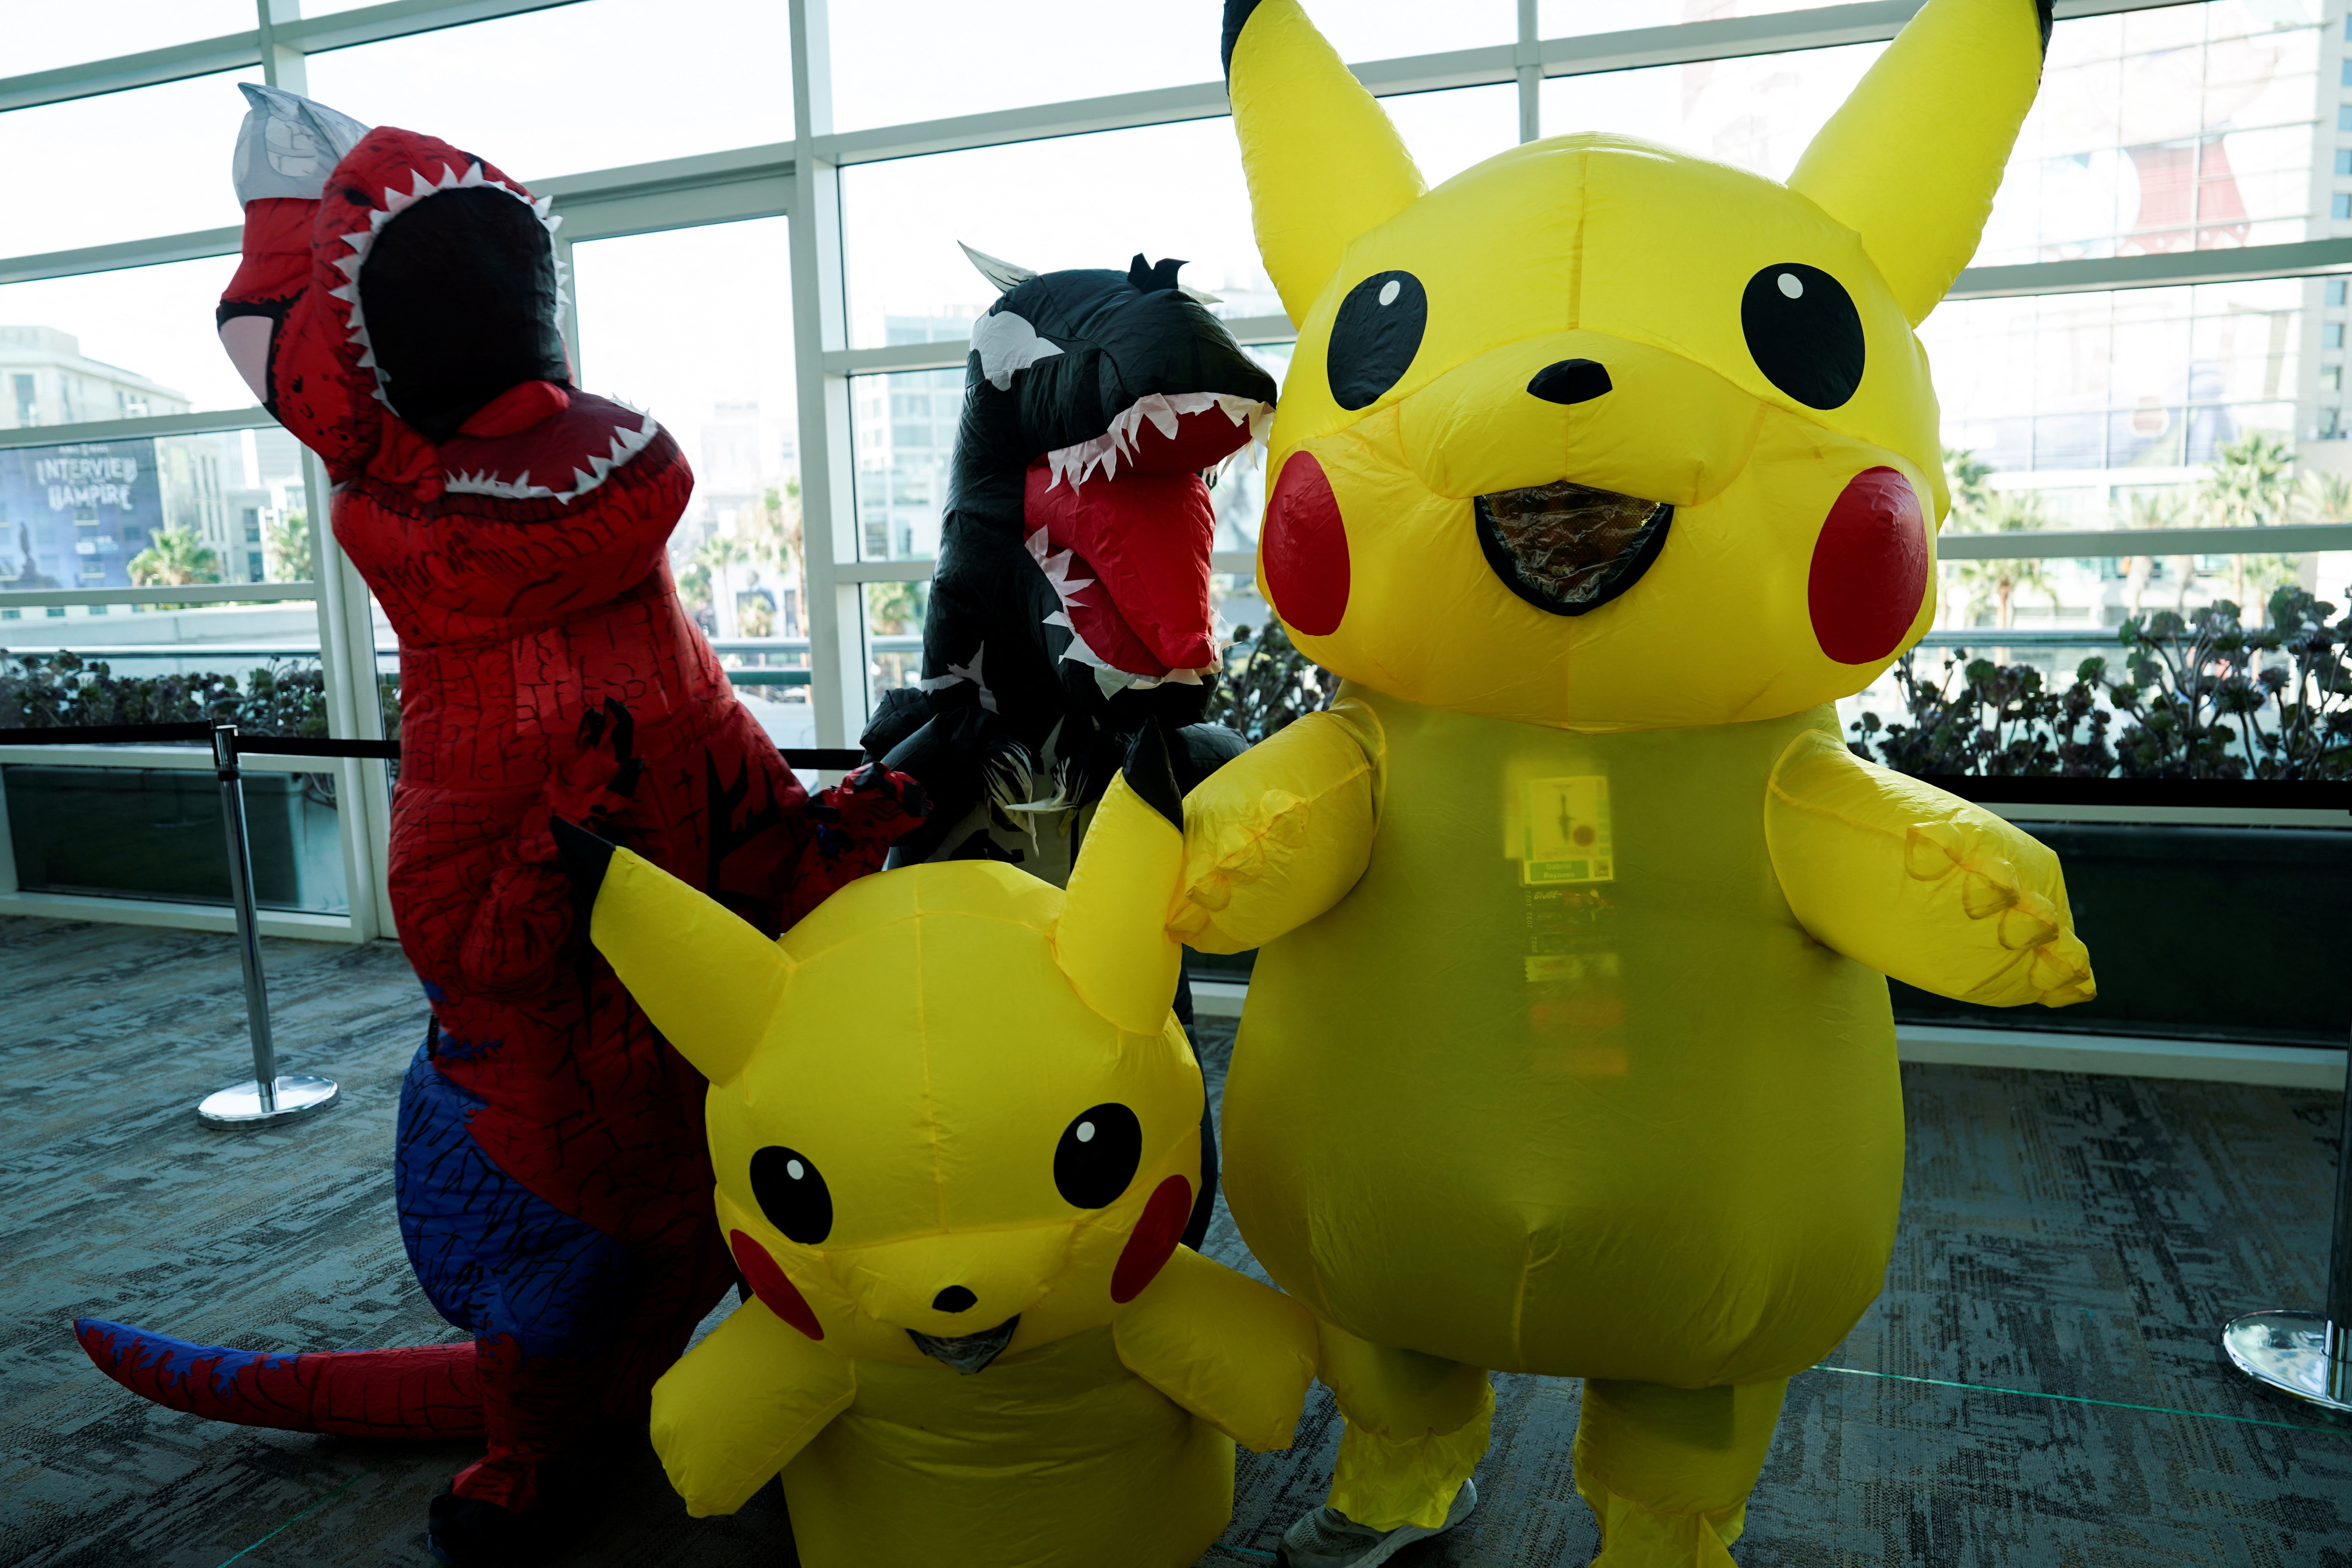 Pikachu es considerado como uno de los pokemon más famosos. (Foto: REUTERS/Bing Guan)